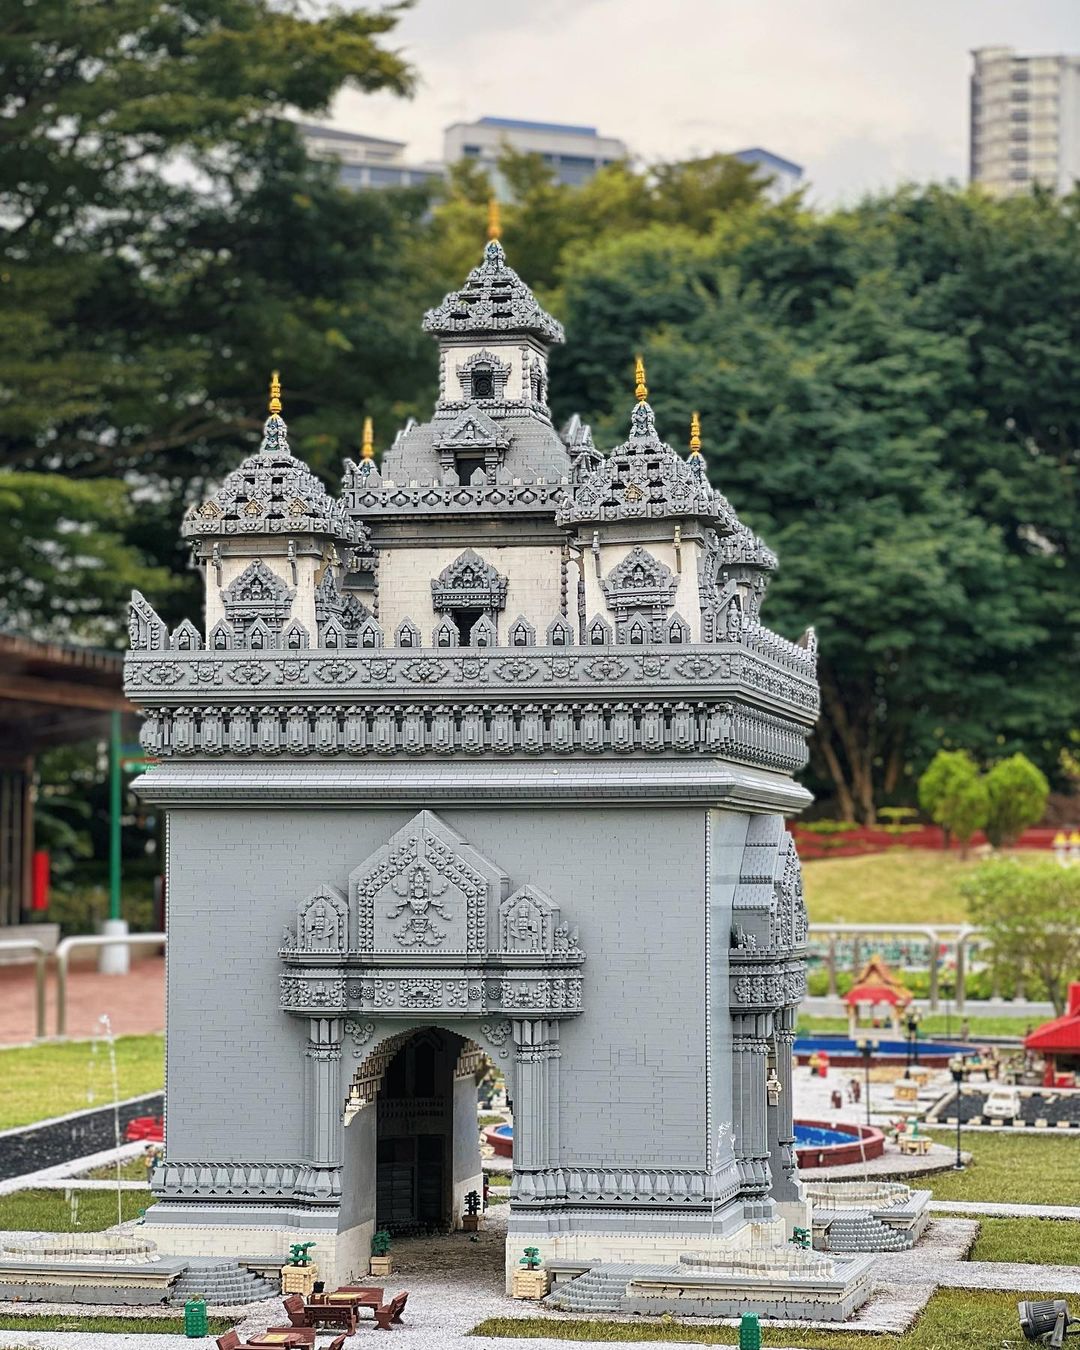 theme parks in malaysia - Legoland Malaysia 2